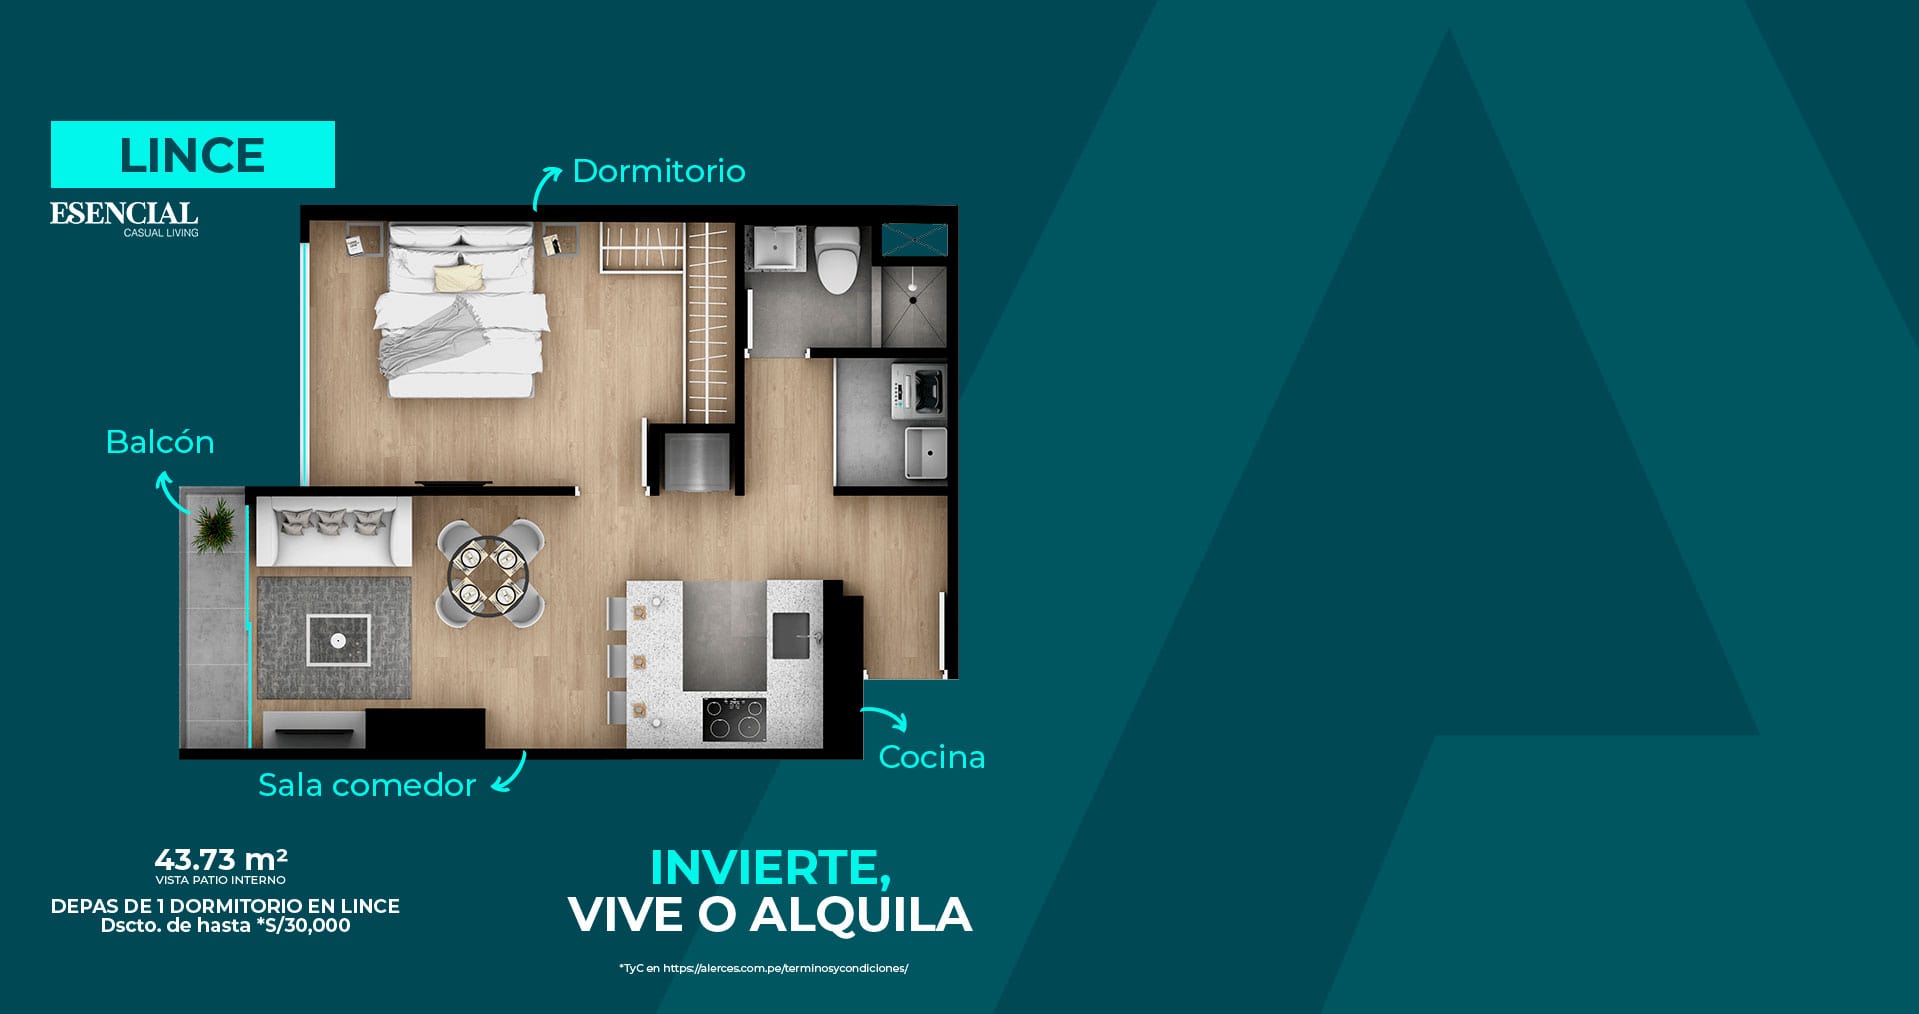 Alerces-inmobiliaria-departamento-1-dormitorio-Web-Home-desktop-header-X03-min-como-objeto-inteligente-2-min